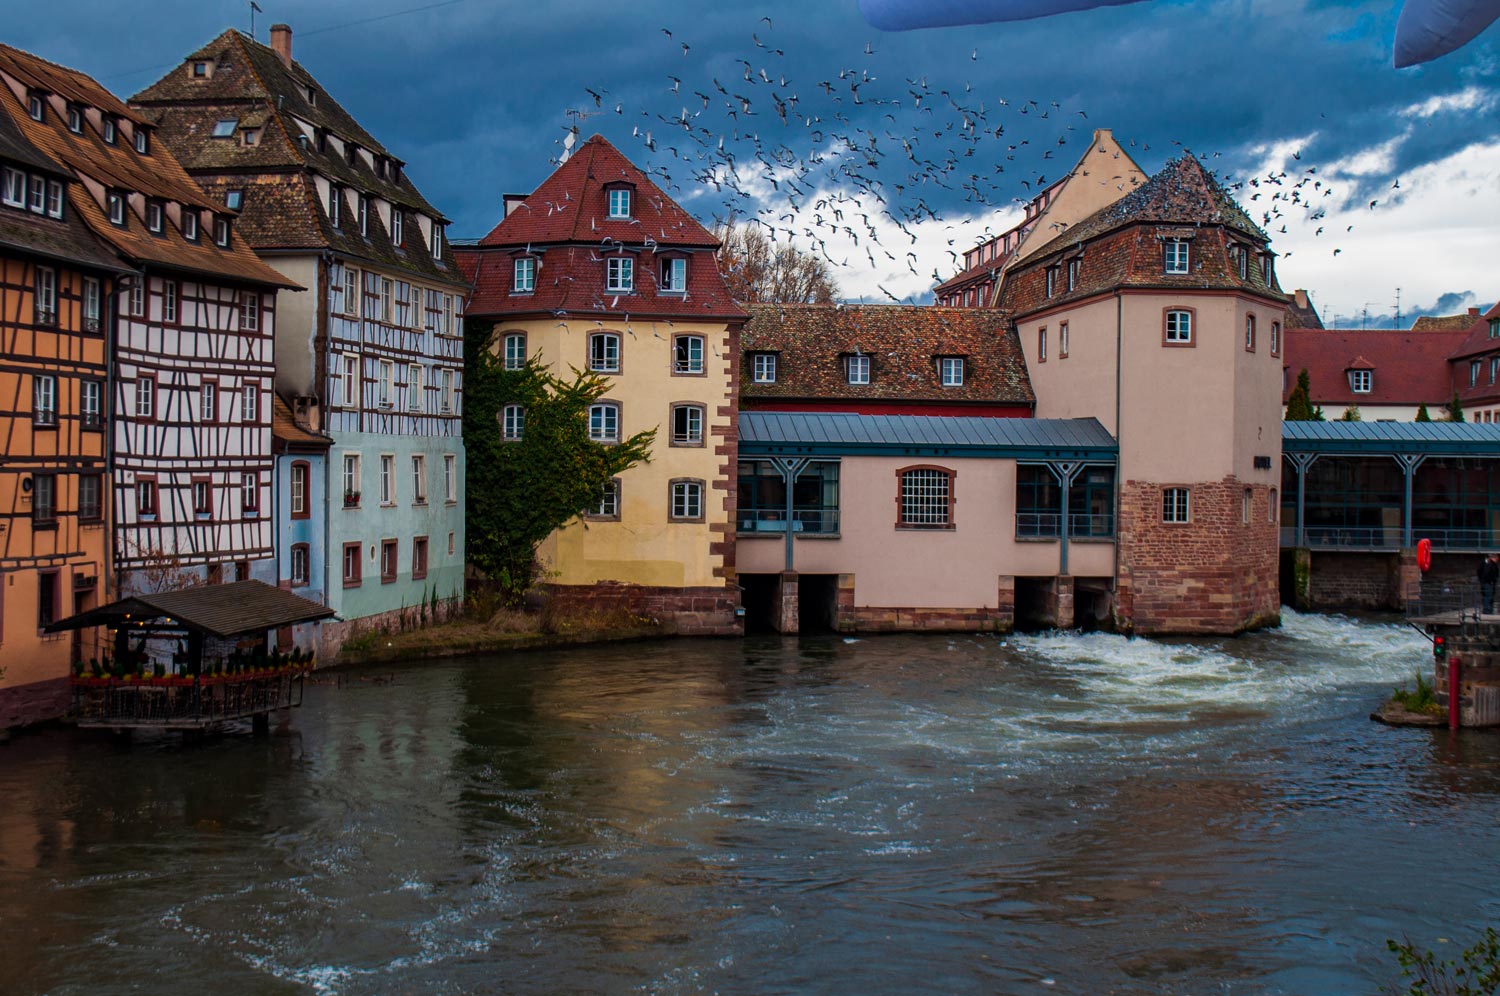 Straßburg Fotospots: 7 traumhafte Sehenswürdigkeiten